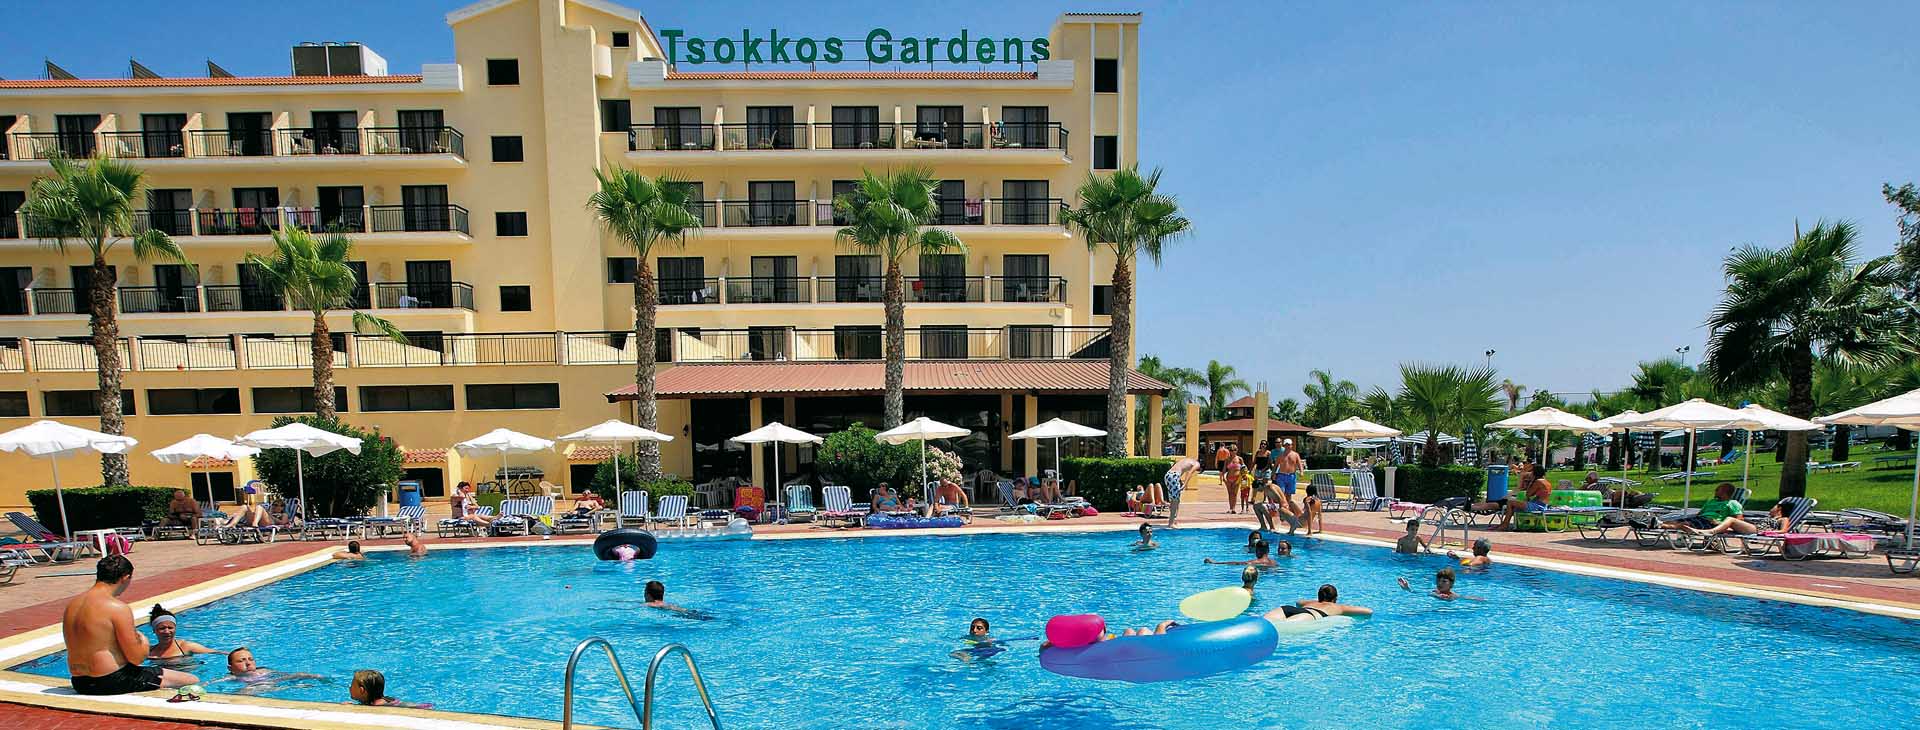 Tsokkos Garden Apartments 